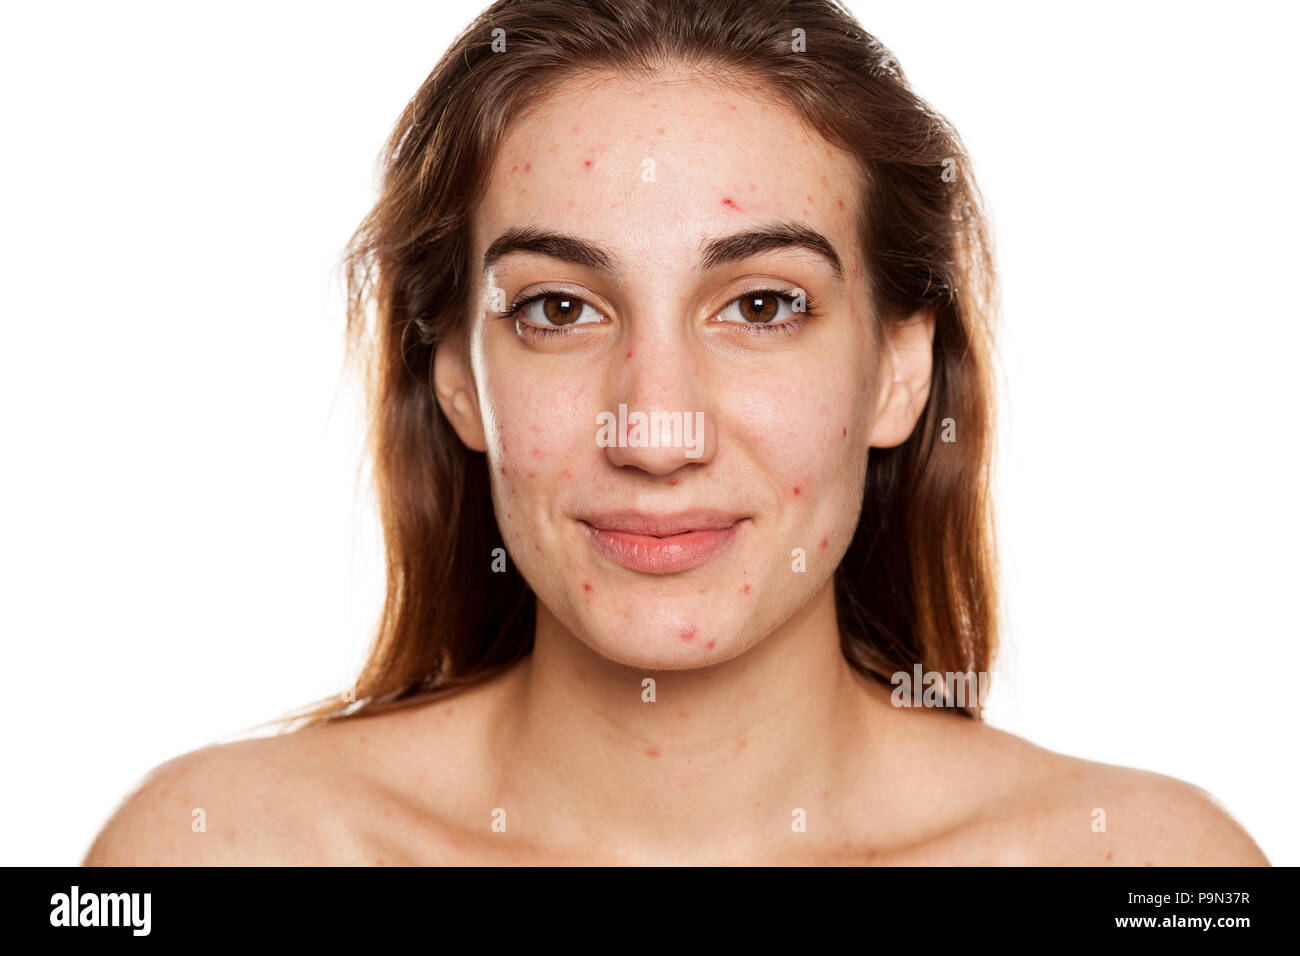 Junge lächelnde Frau mit problematischer Haut und ohne Make-up Posen auf weißem Hintergrund Stockfoto